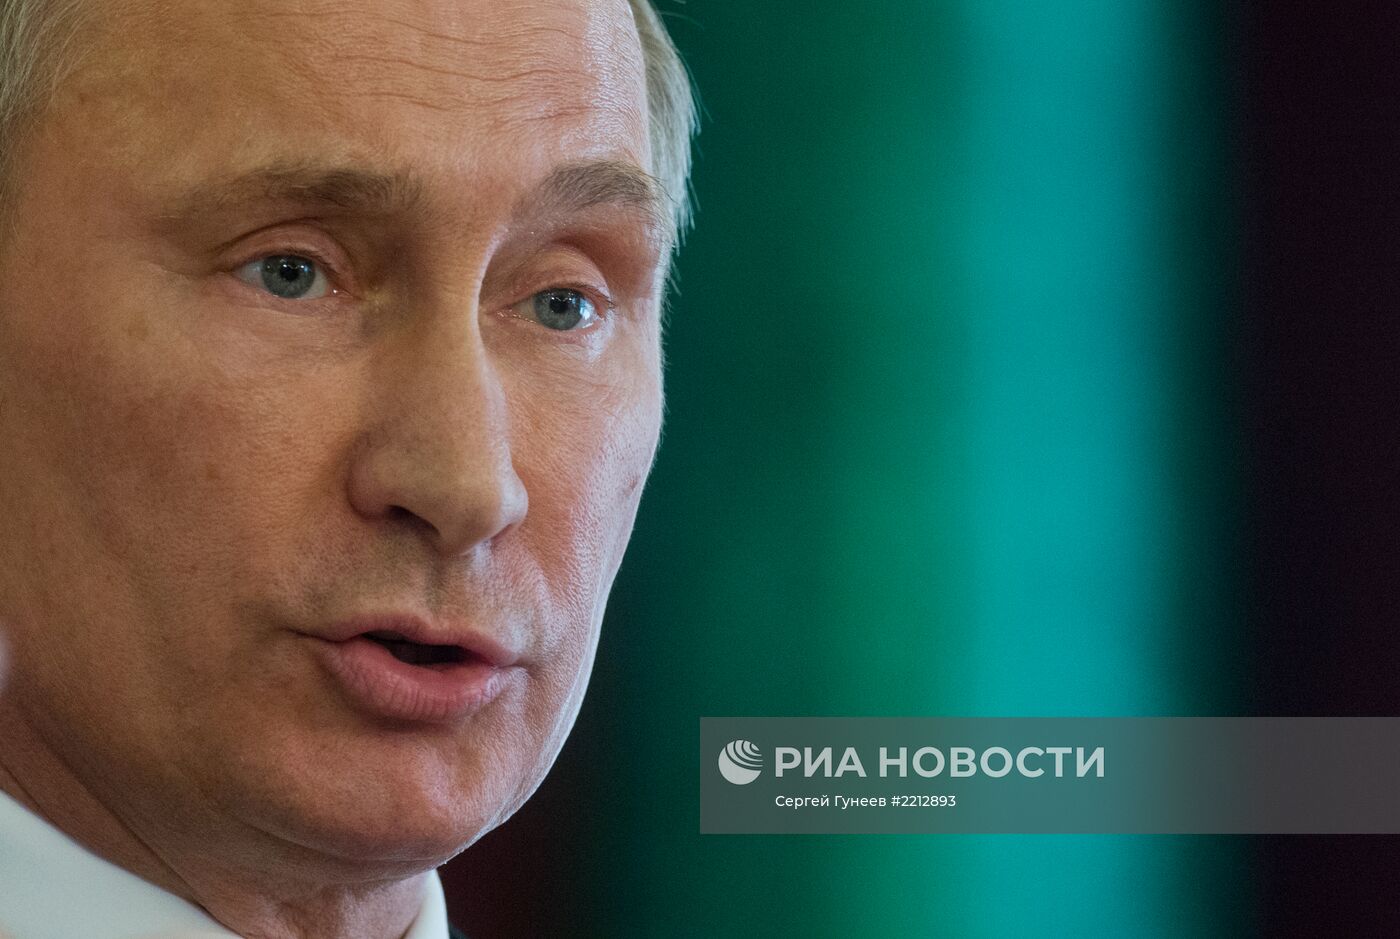 В.Путин на заседании 2-го саммита Форума стран-экспортеров газа